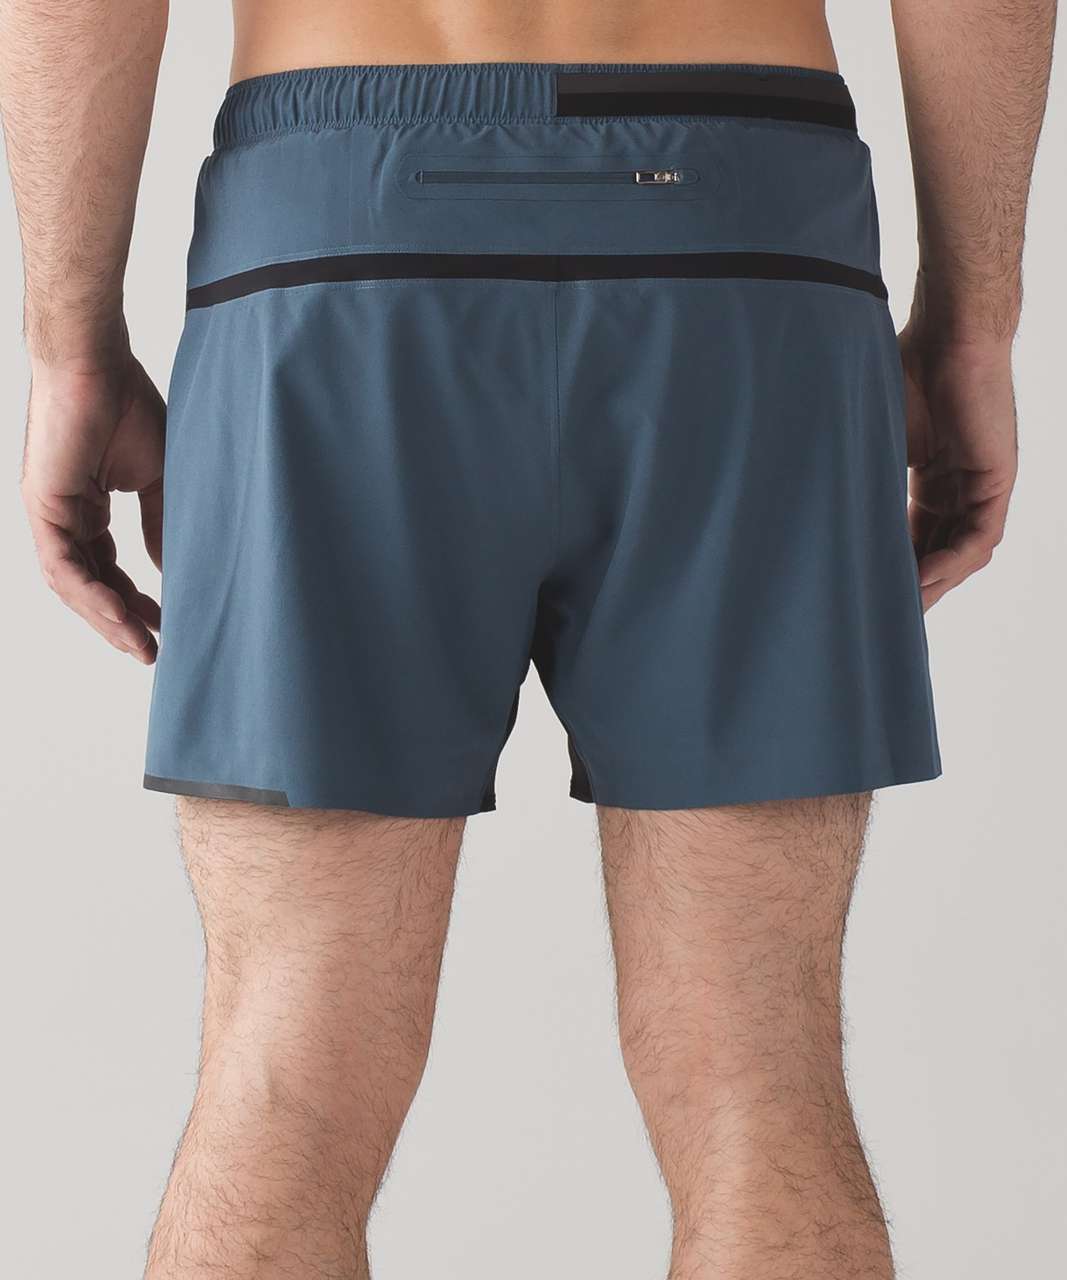 lulu surge shorts